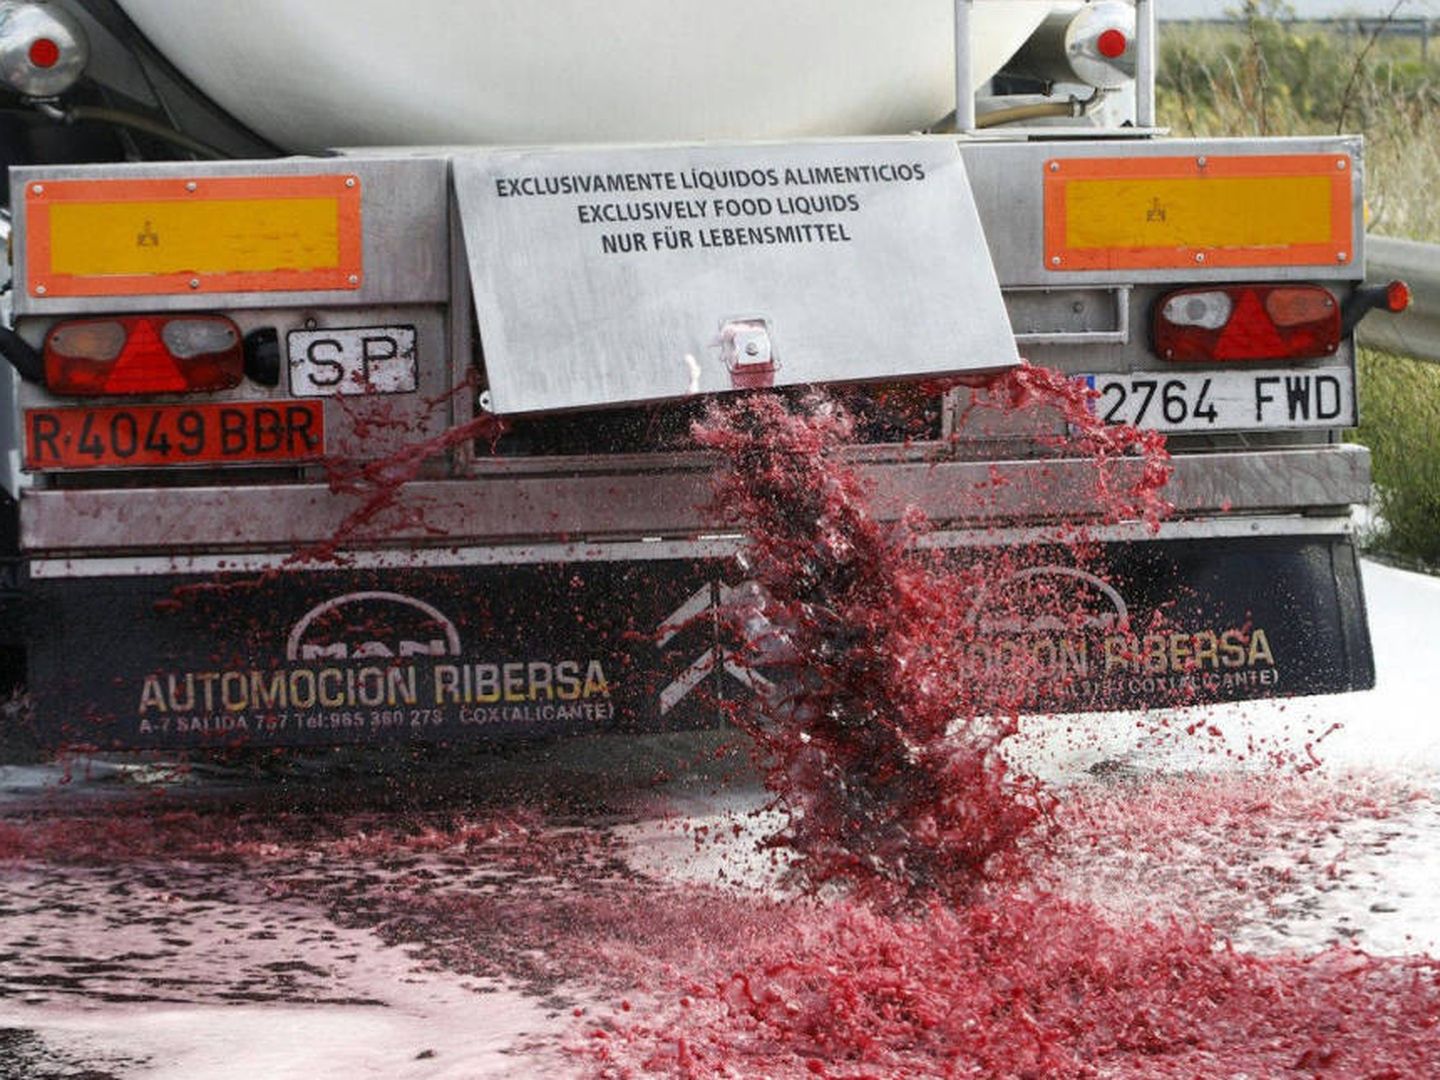 Un camión con vino español a granel atacado en Francia hace un año.